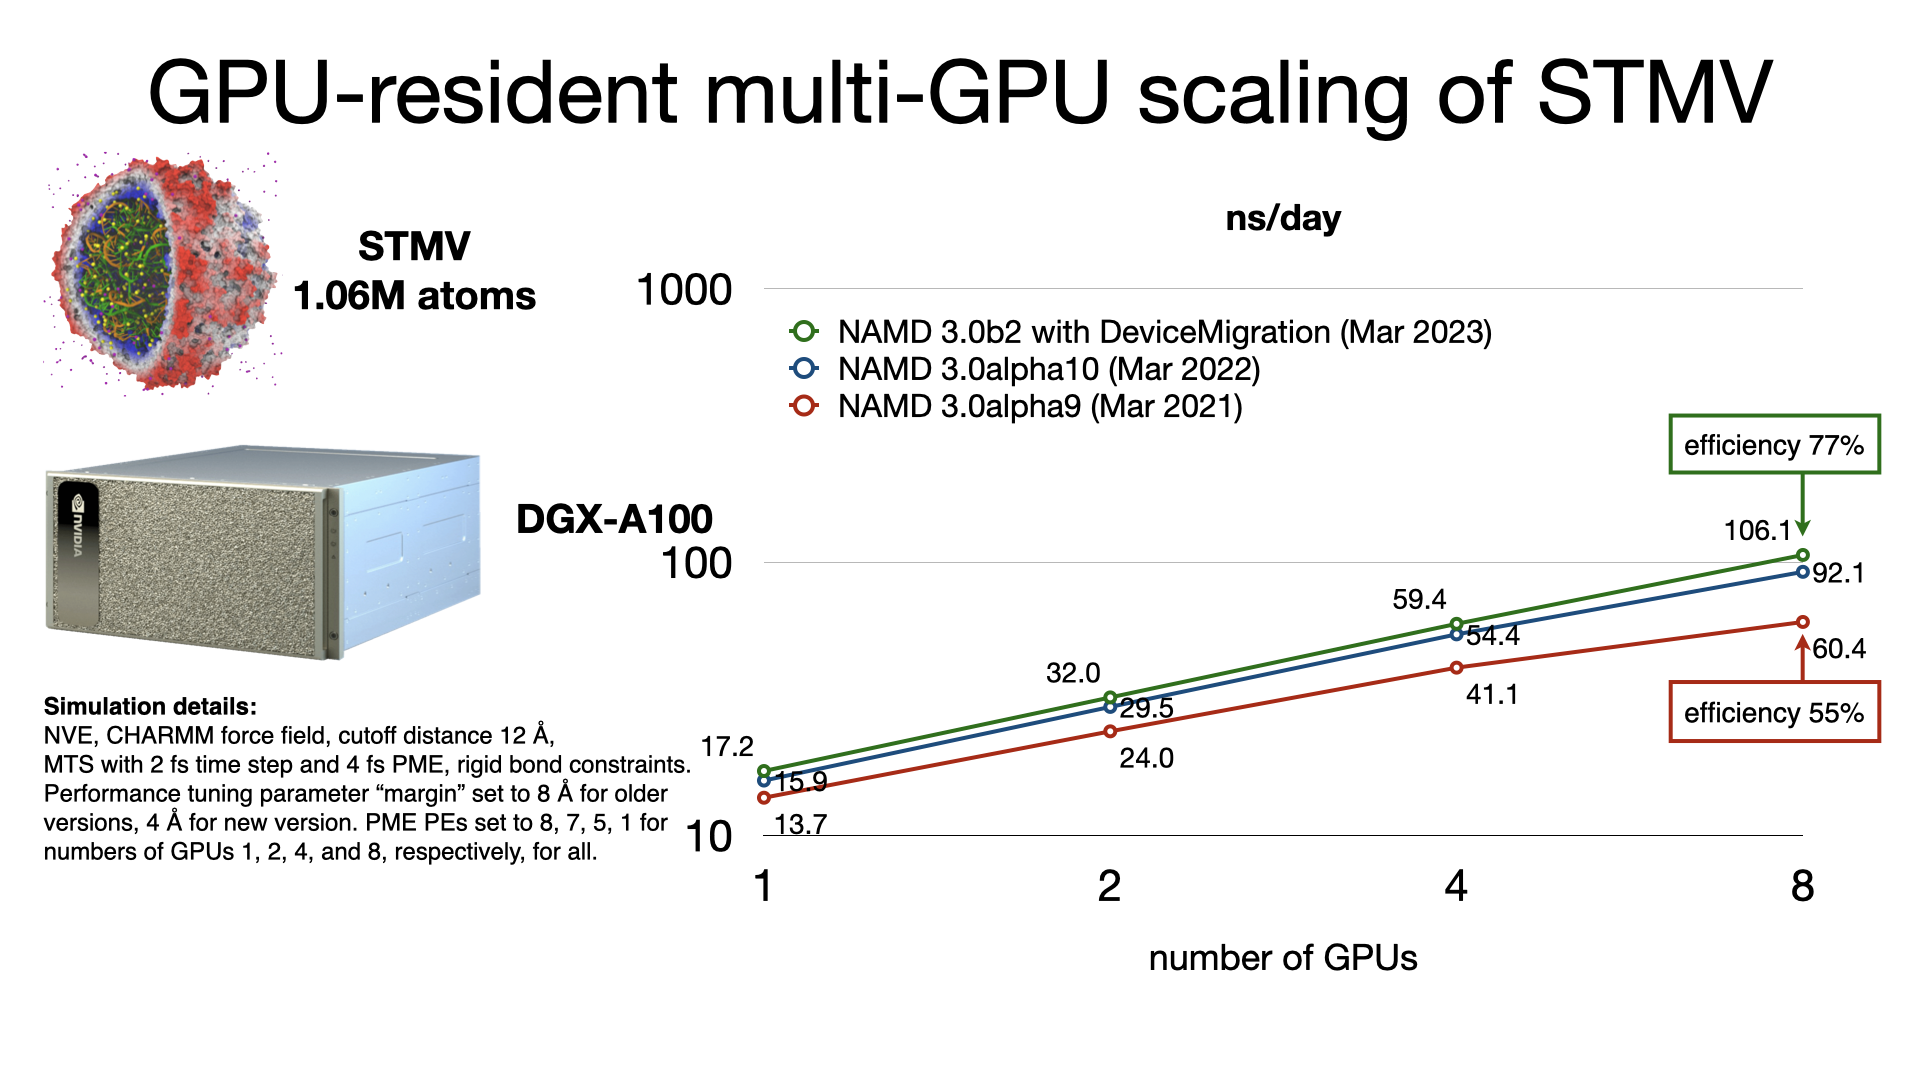 GPU-resident multi-GPU scaling on STMV